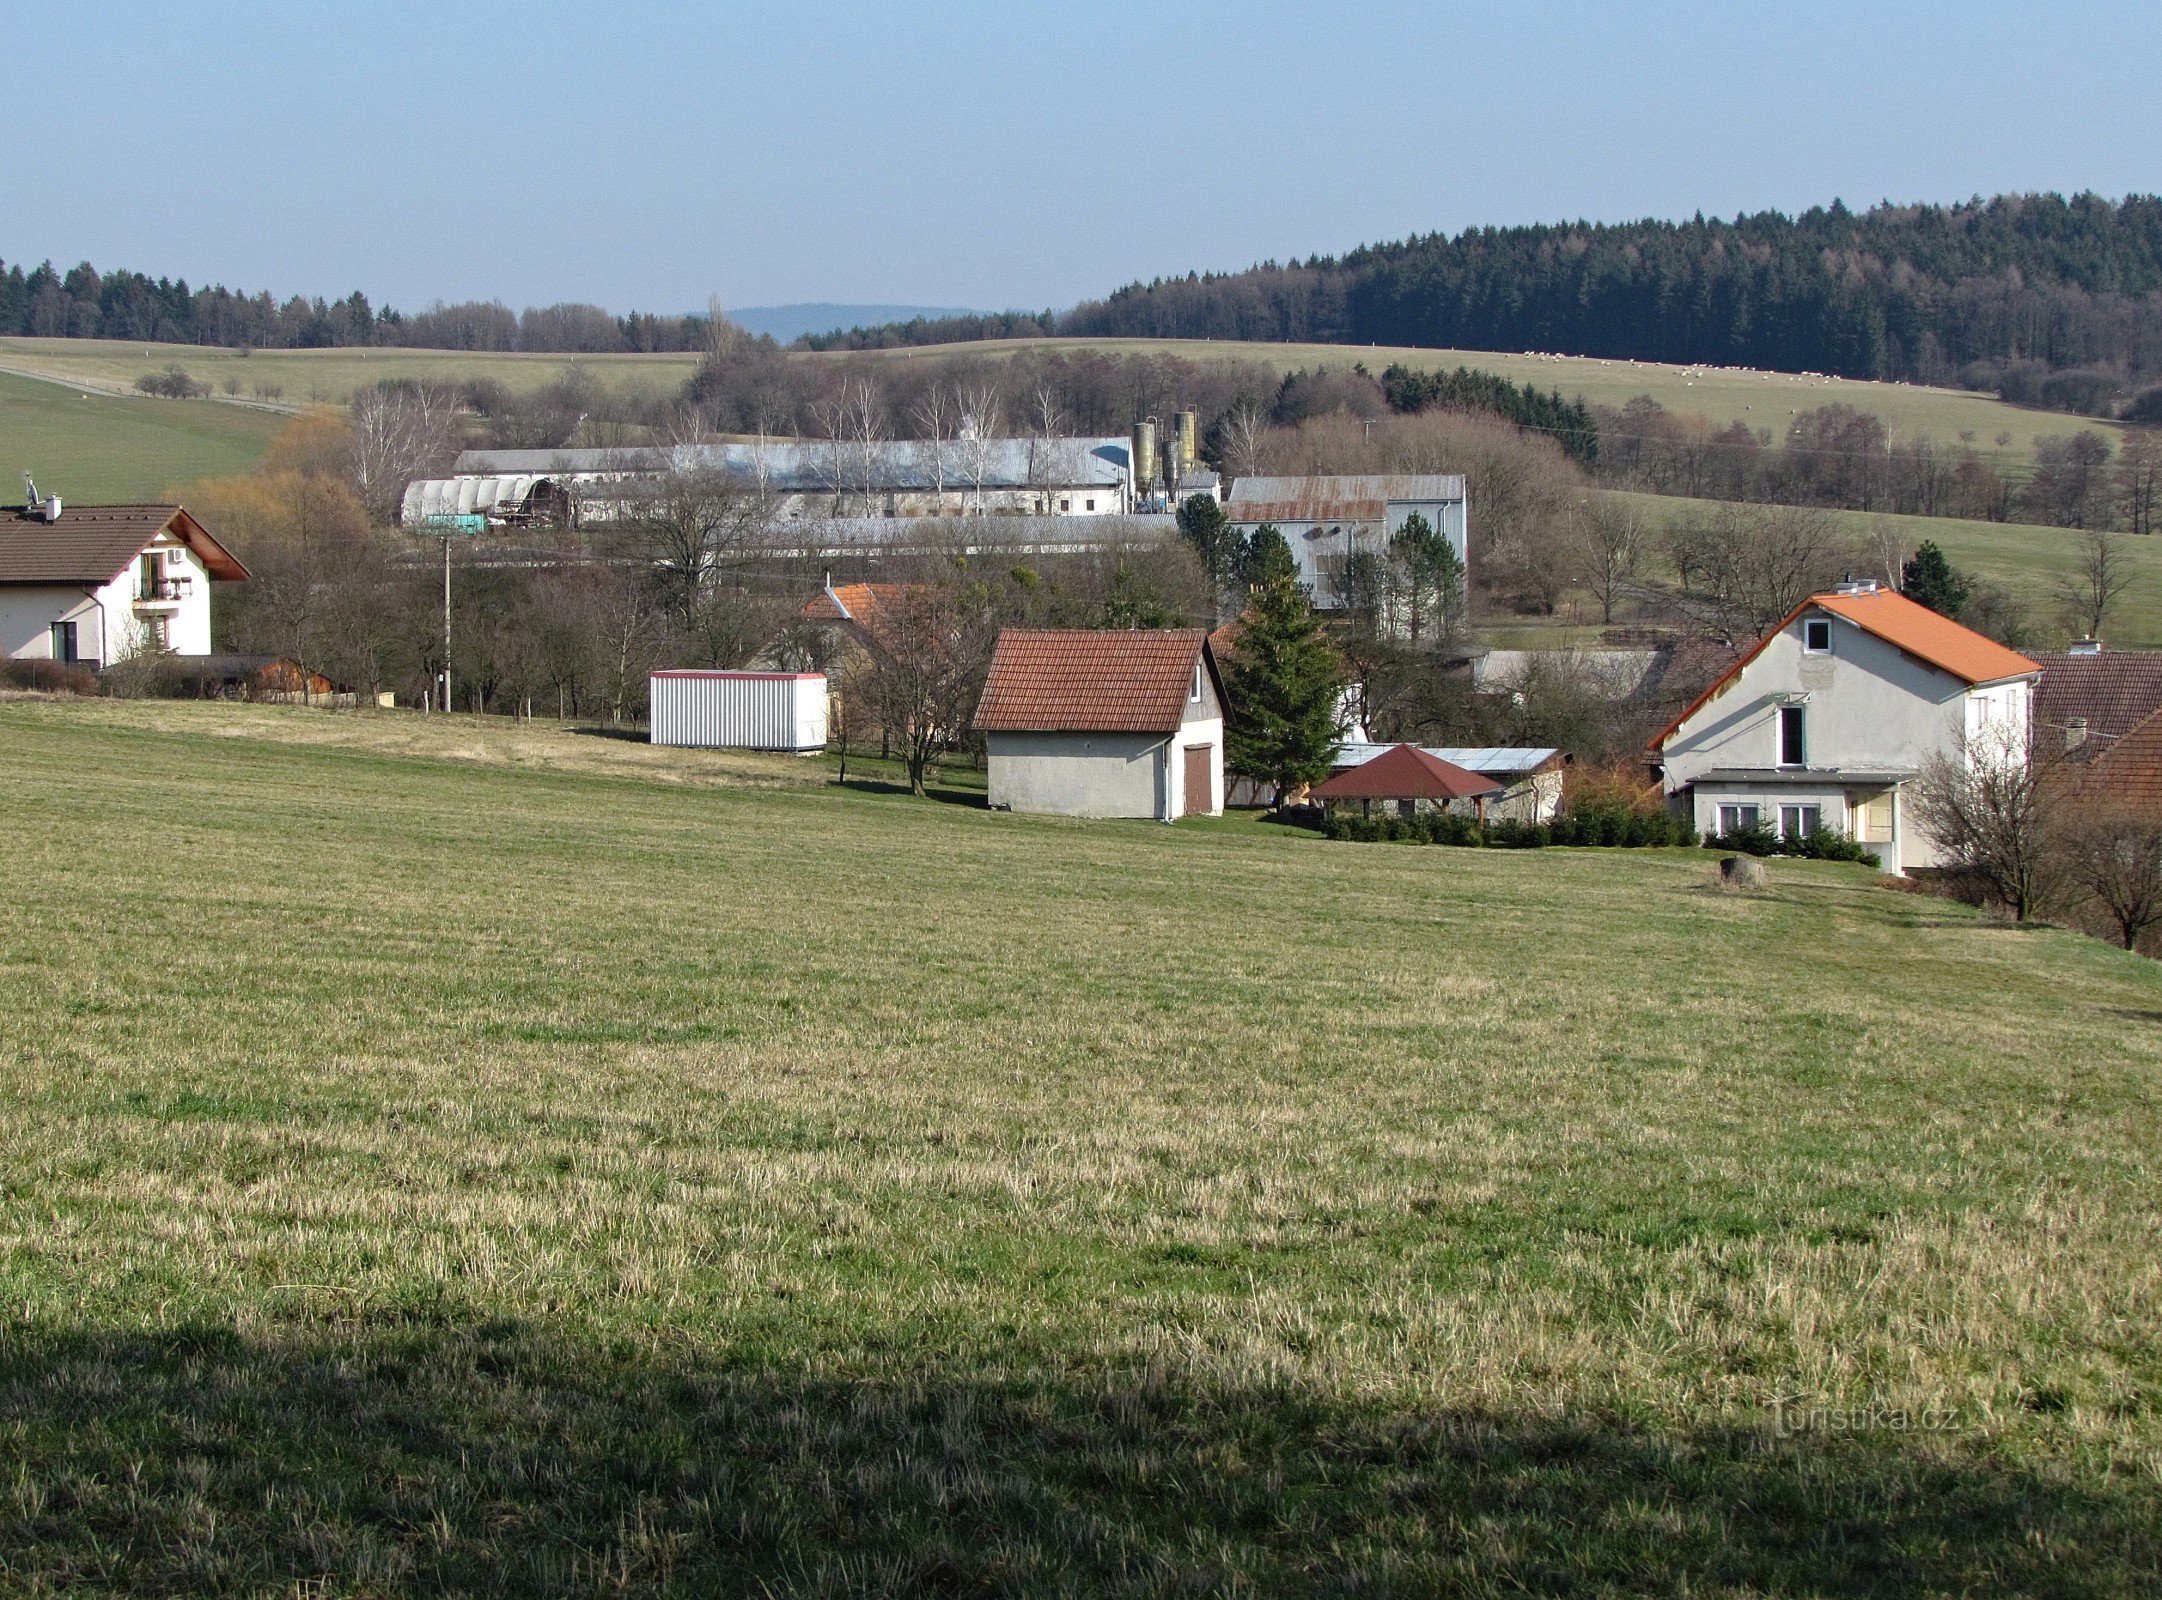 About the village of Raková